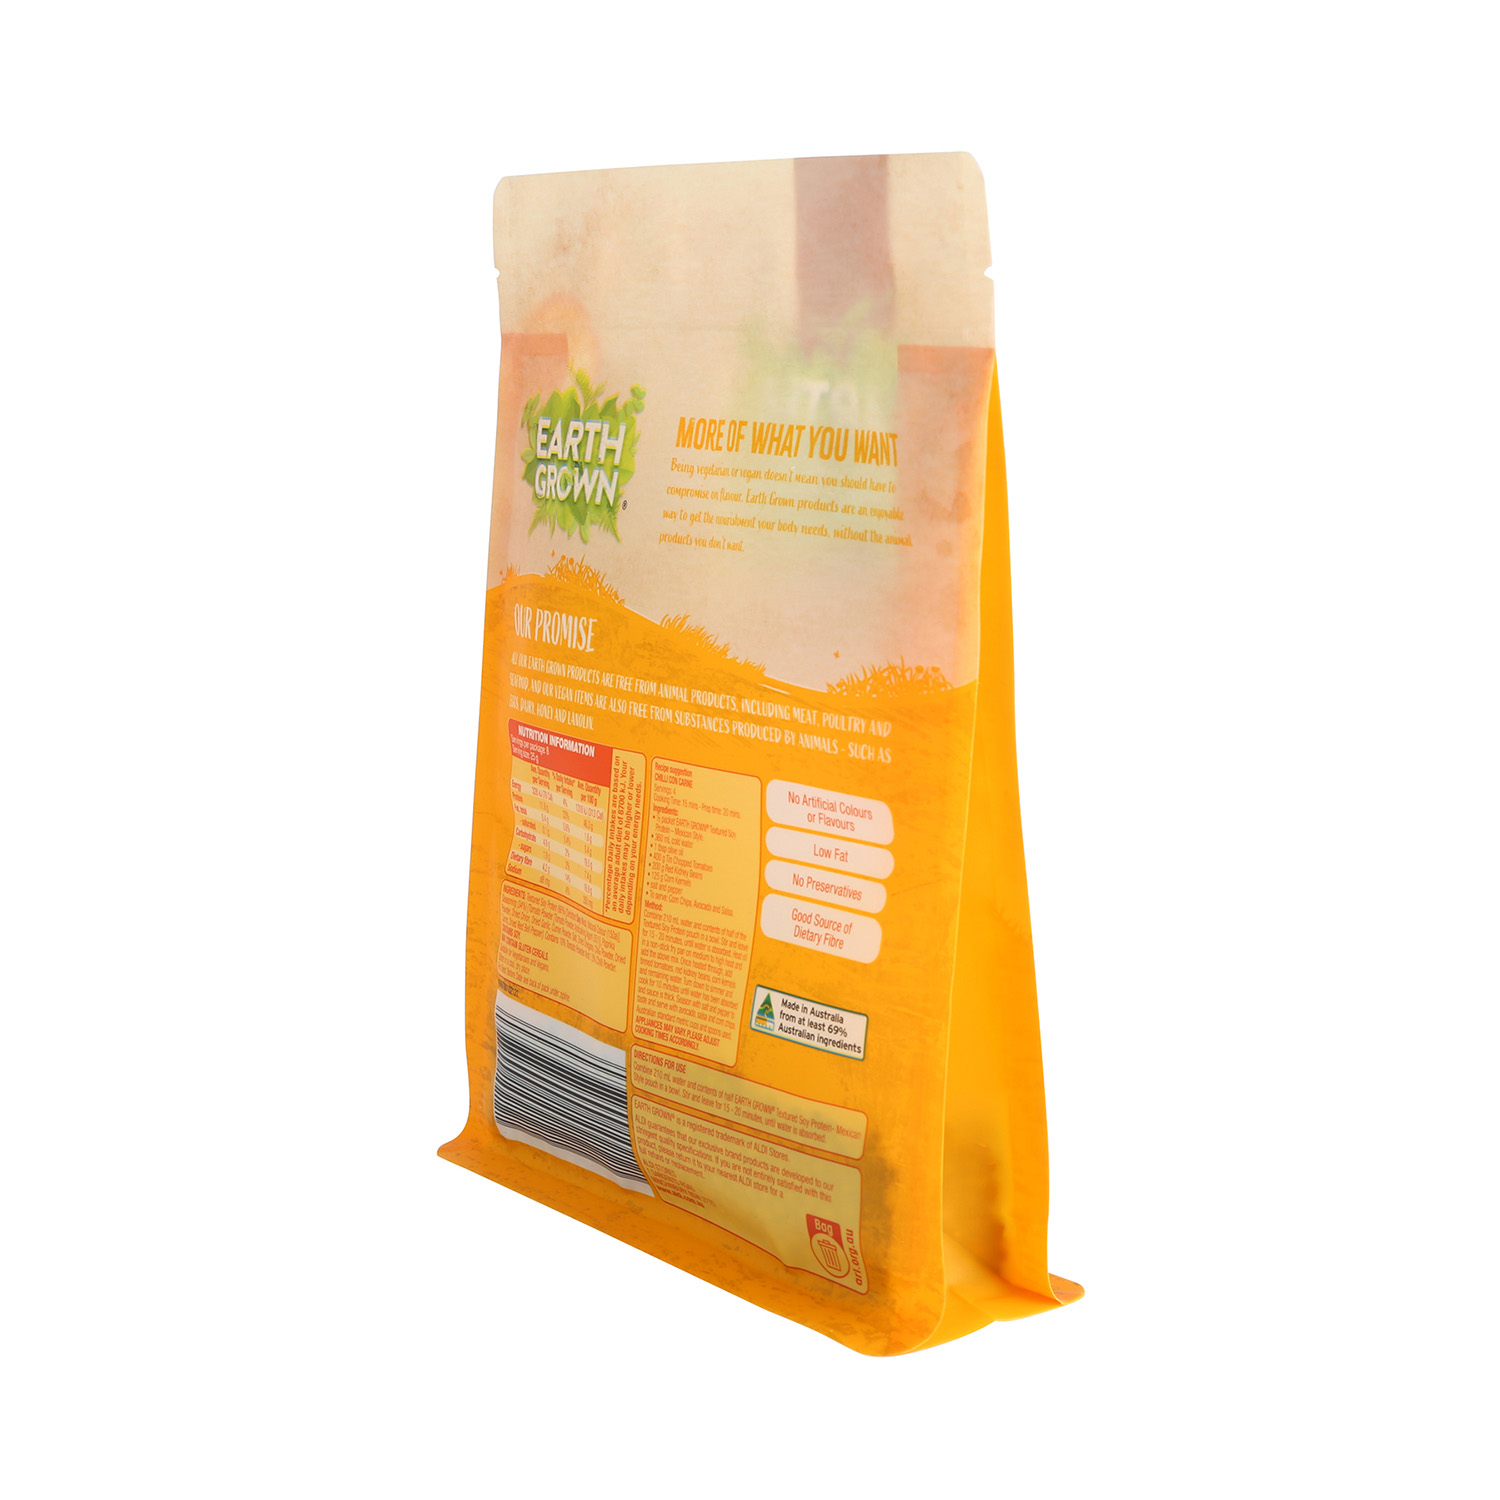 Хорошее качество индивидуальной печати, пригодной для вторичного использования, желтого цвета с плоским дном для упаковки пищевых продуктов с застежкой-молнией и окном